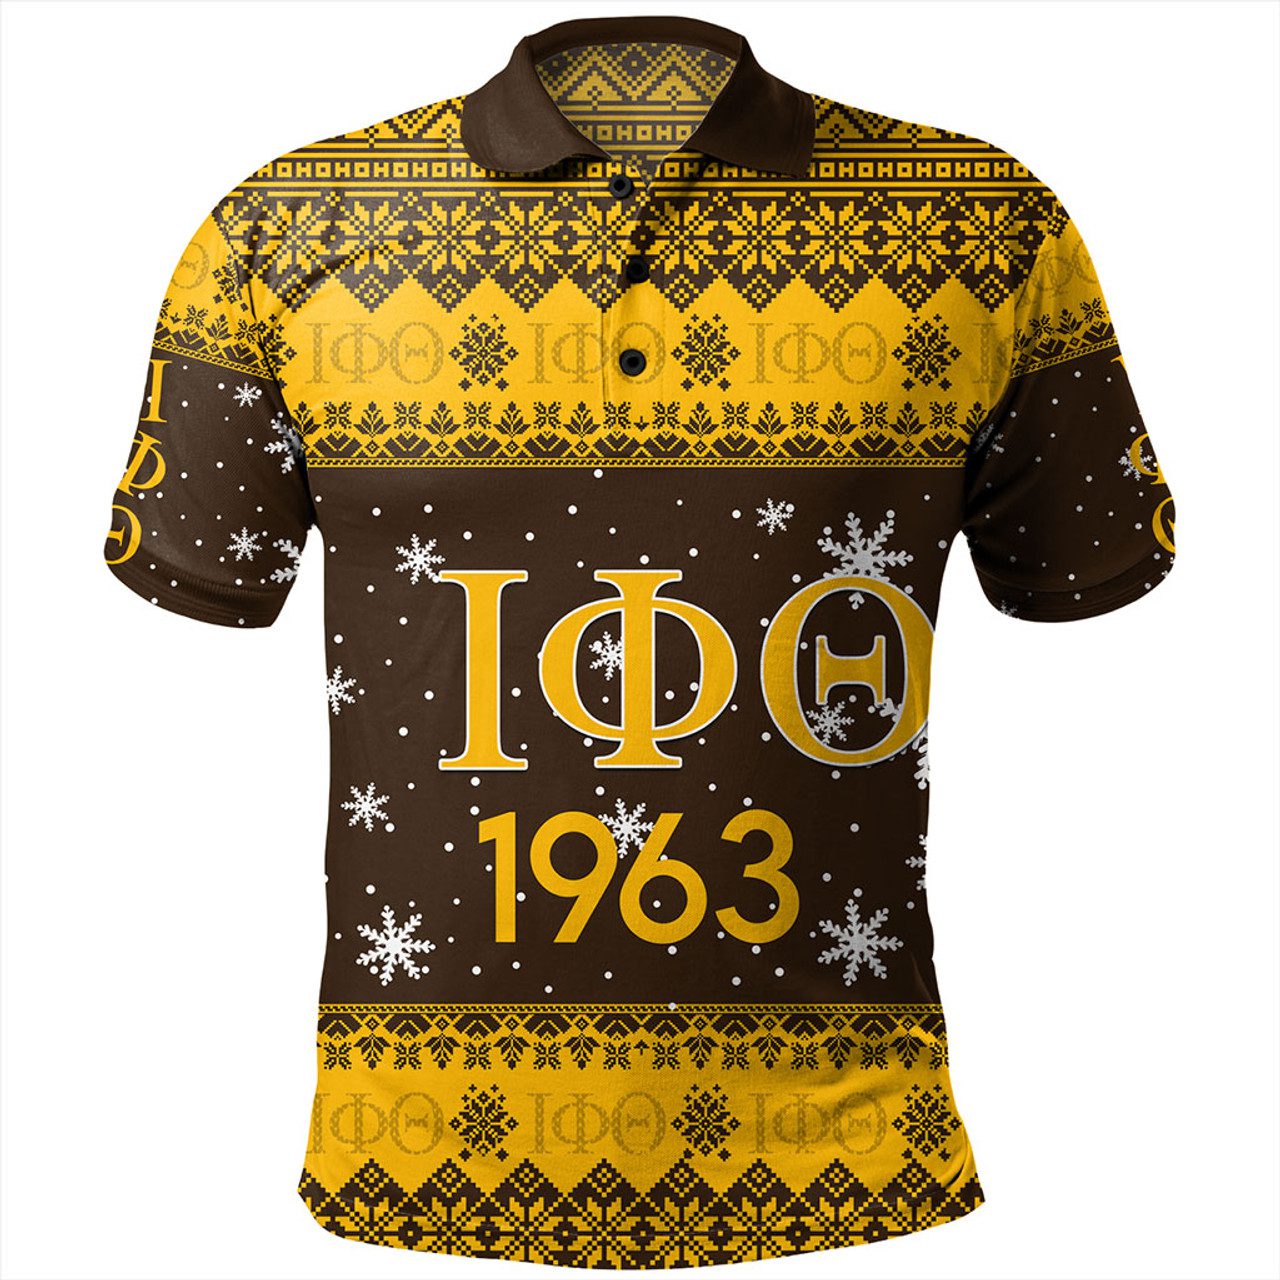 Iota Phi Theta Polo Shirt Fraternity Inc Christmas